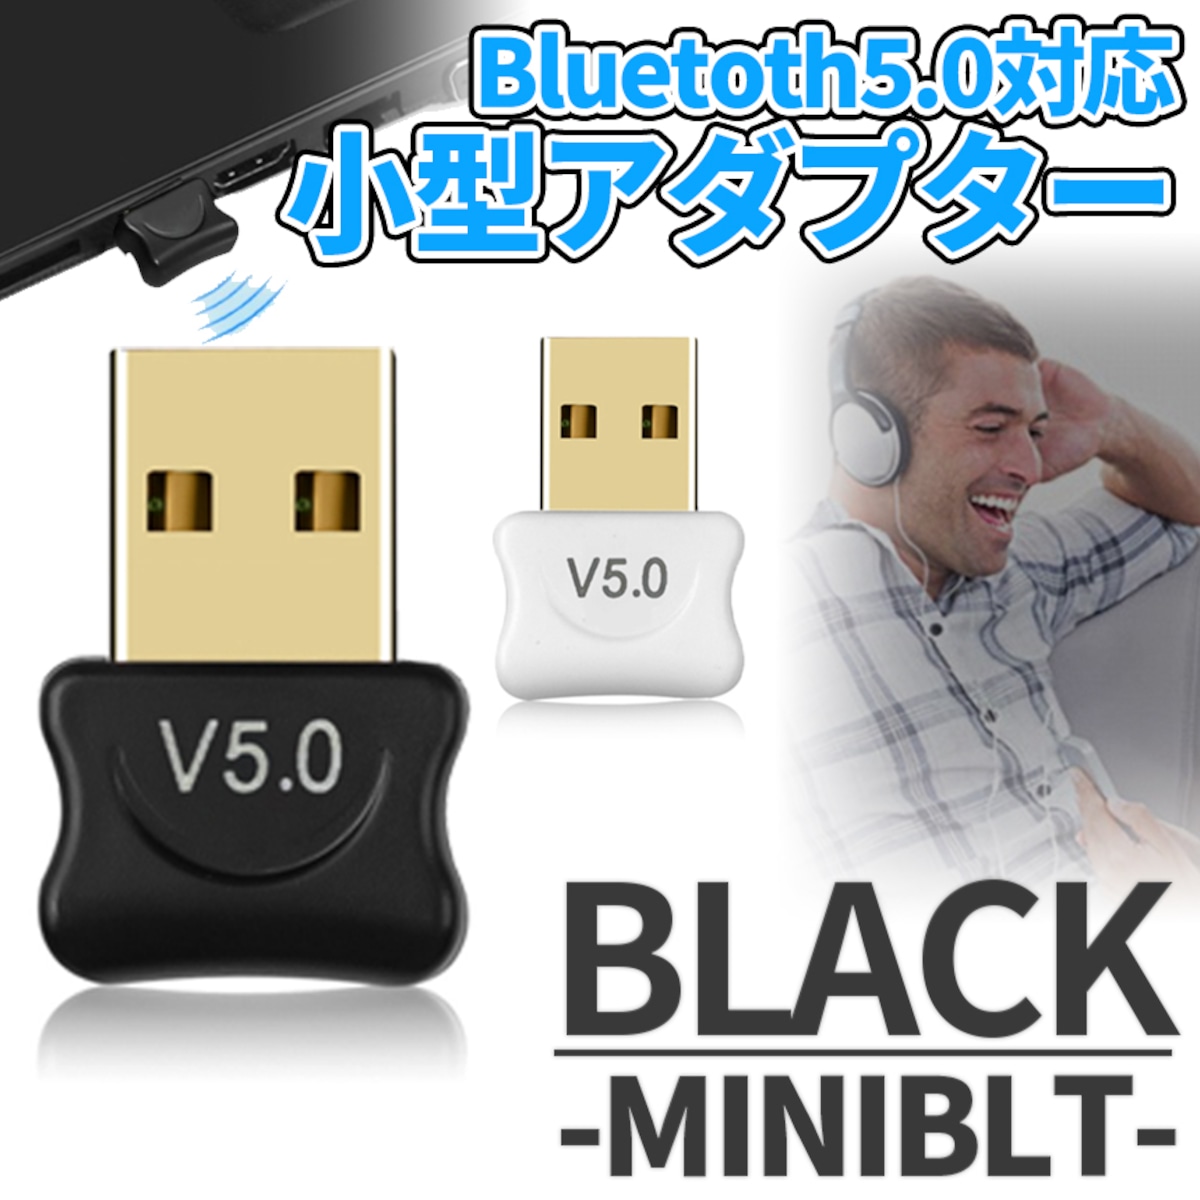 5.0 アダプタ ブラック USB 無線 ドングル 小型 ブルートゥース ノート PC パソコン iPad マウス キーボード ヘッドホン MINIBT-BK | palone